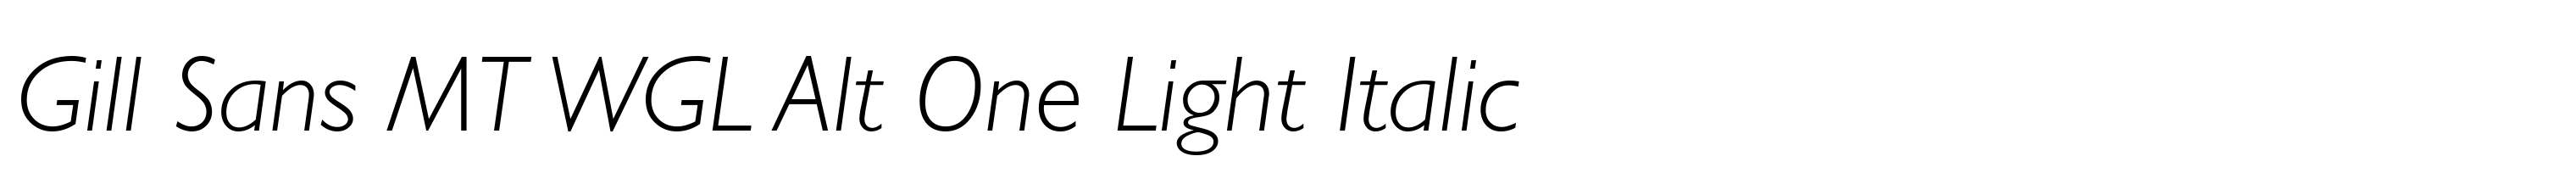 Gill Sans MT WGL Alt One Light Italic